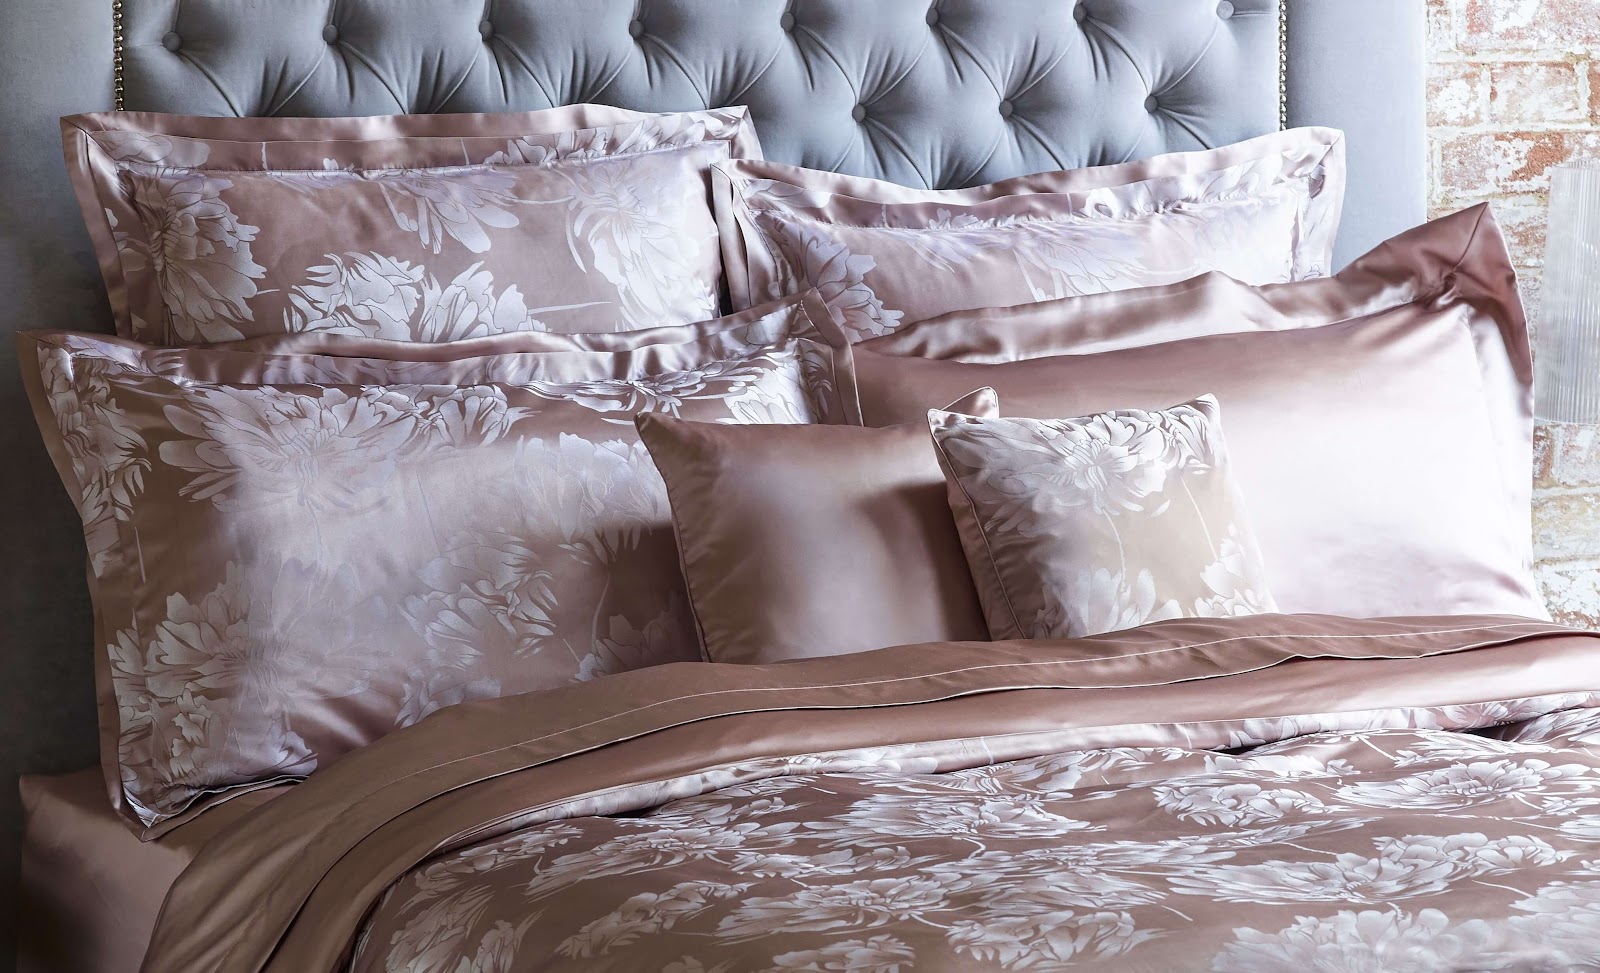  Drap giường phi lụa màu nâu nhạt ấn tượng 